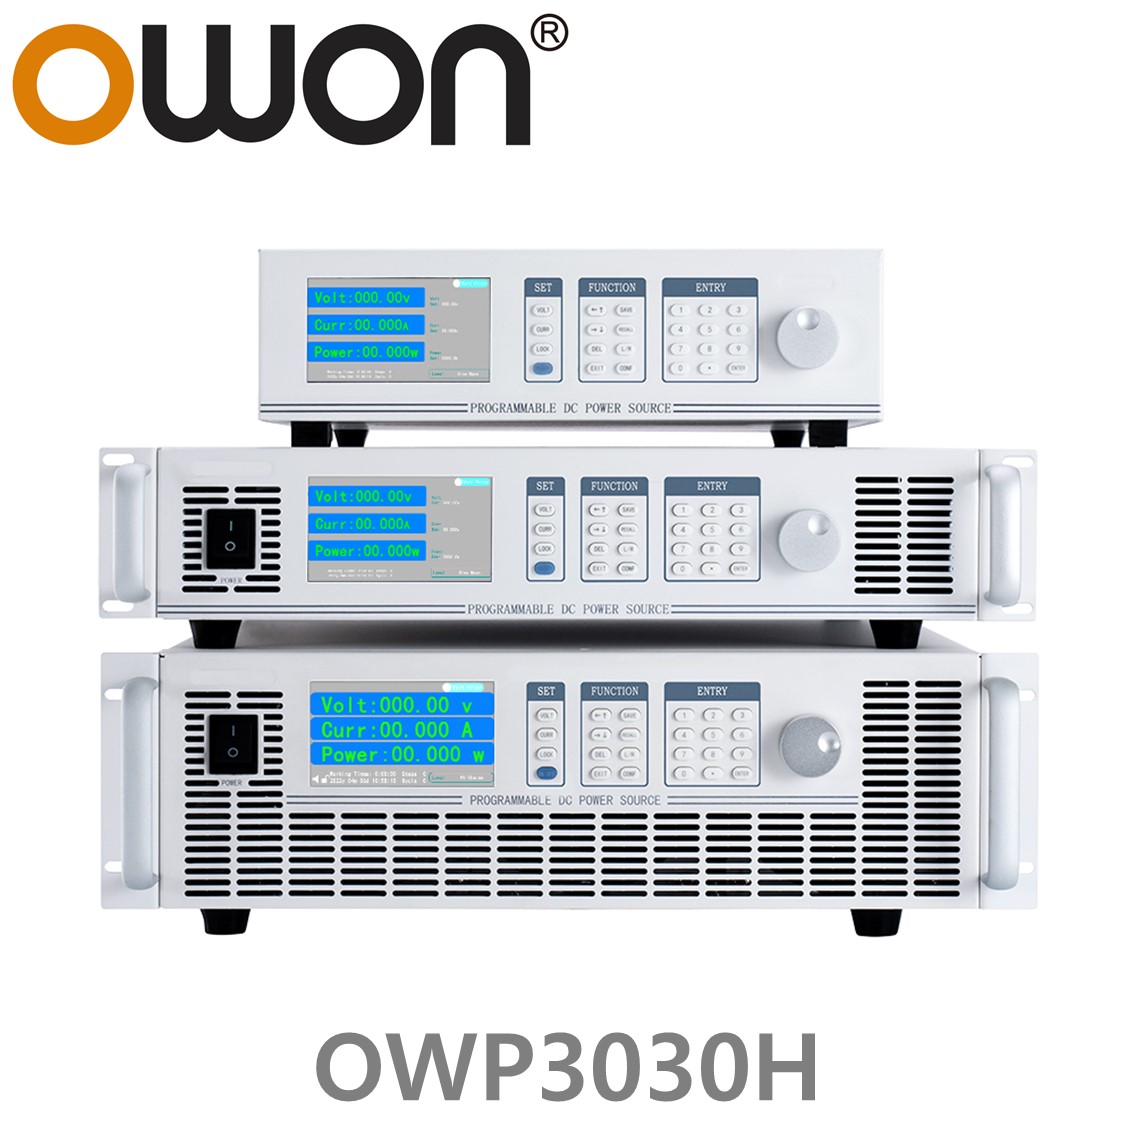 [ OWON ] OWP3030H 고전력 DC파워서플라이, 0-300.00V / 0-15.000A / 3000.0W DC전원공급장치